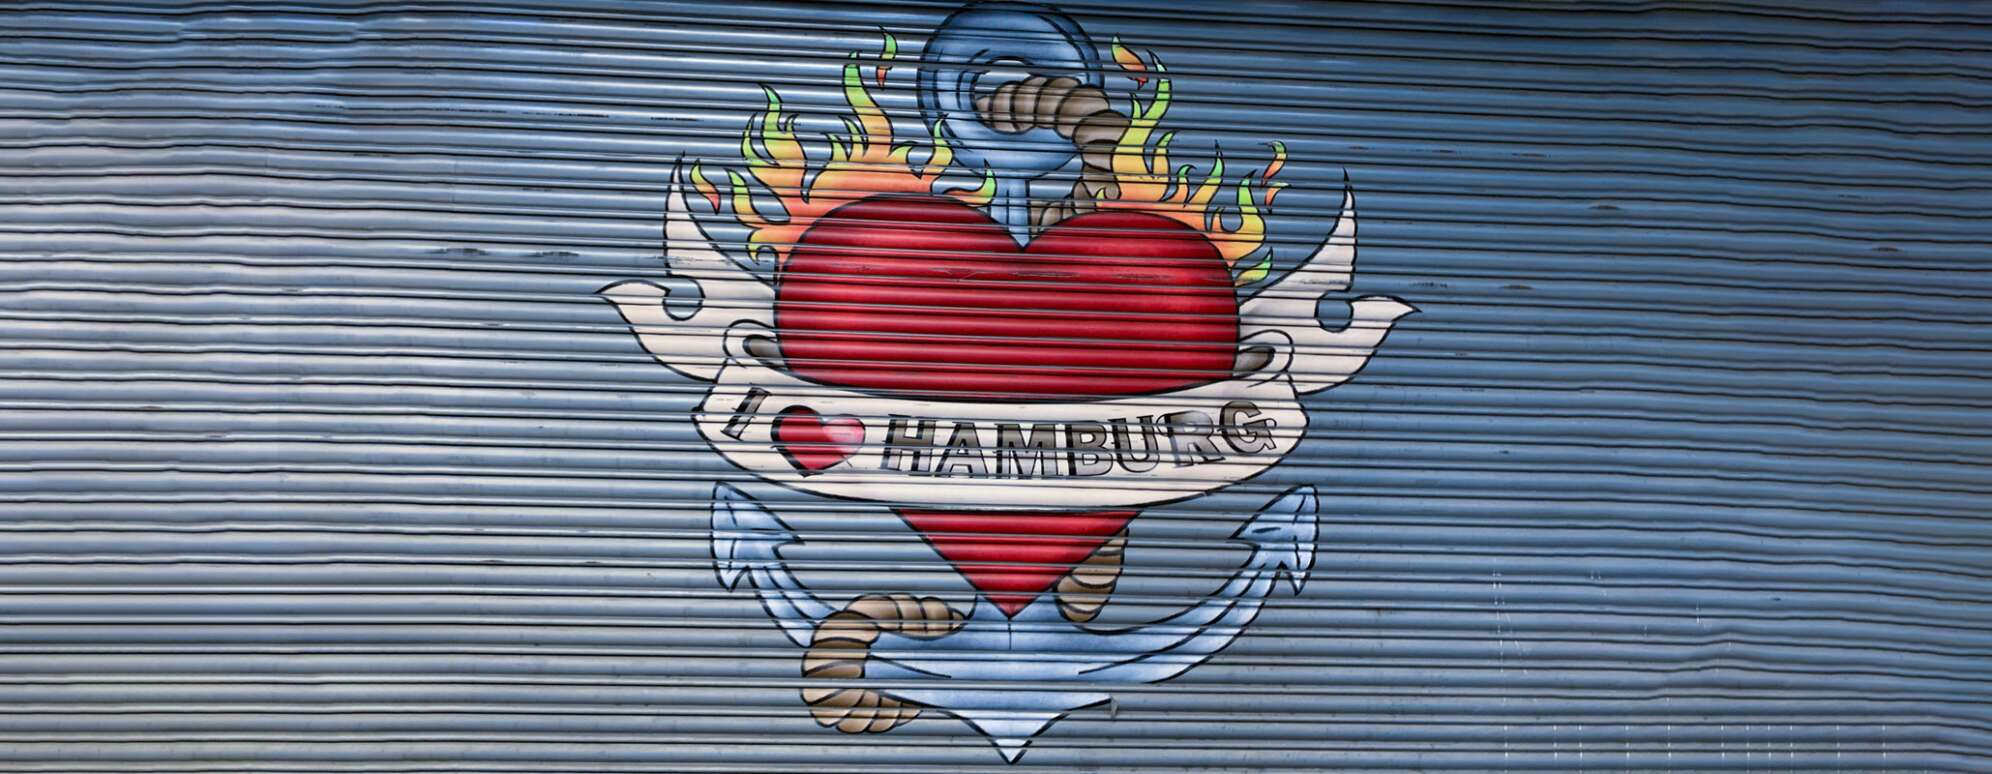 Bild von einem Graffiti auf einem Garagentor im Tattoo-Style: Ein Herz mit Flammen und Anker dahinter, mit Text I love Hamburg